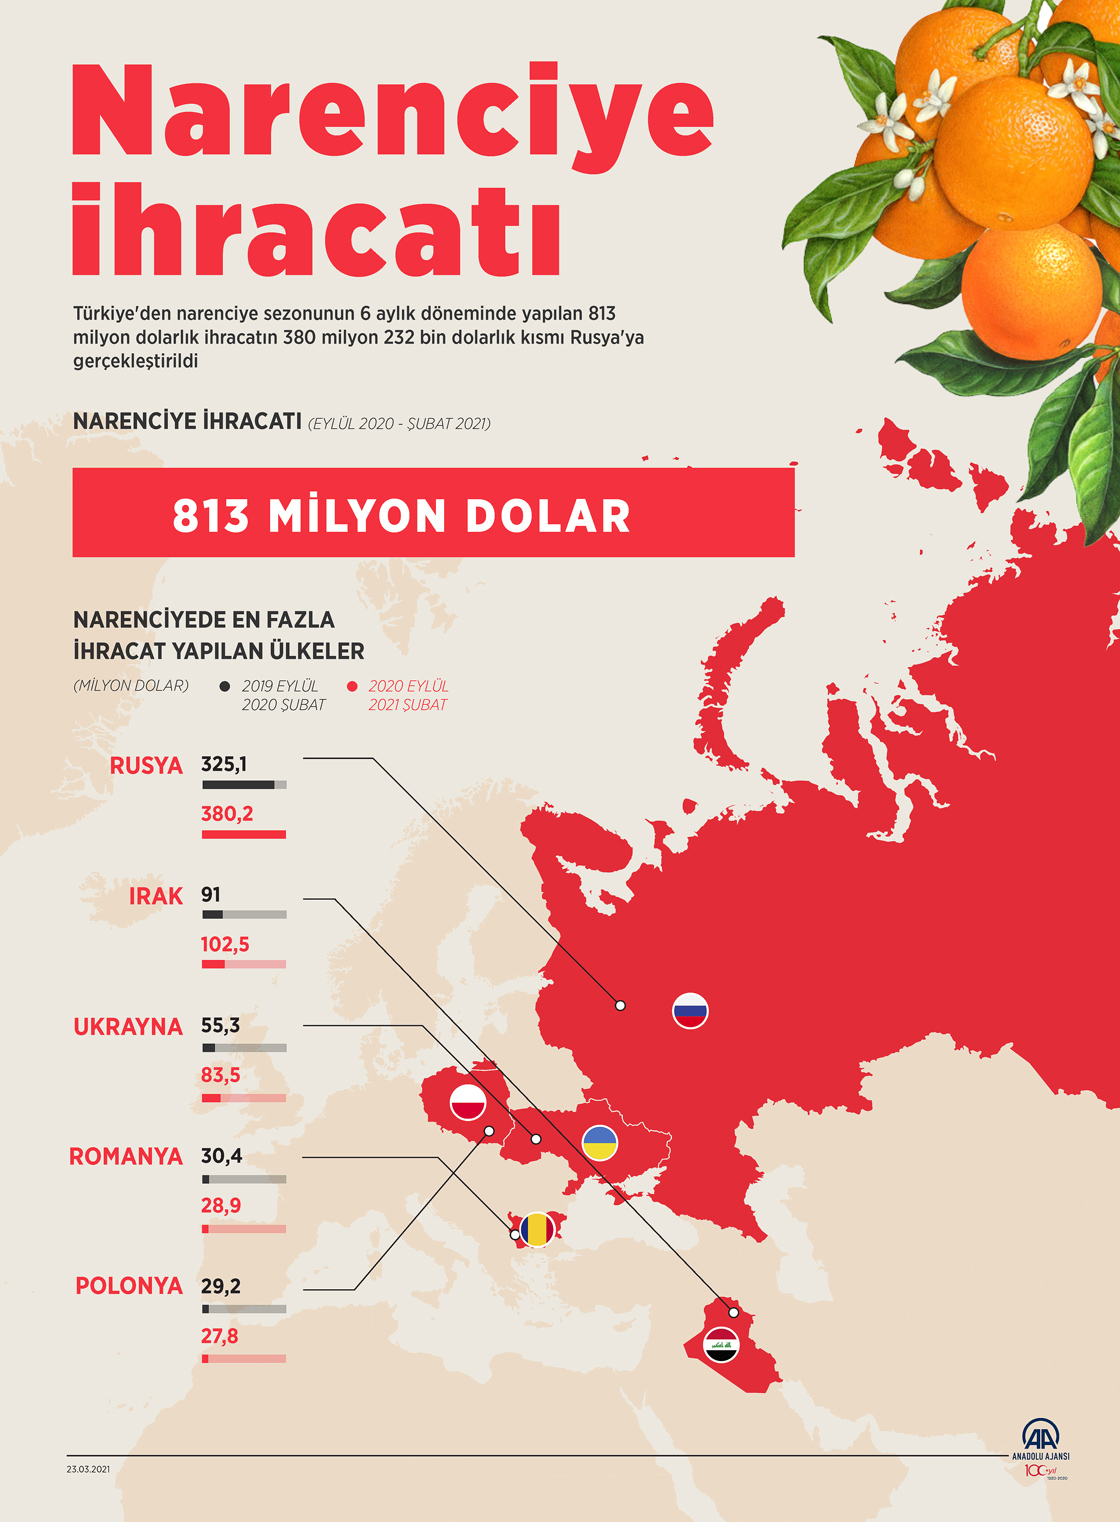 Türk narenciyesi eylül-şubat döneminde en fazla Rusya'ya satıldı